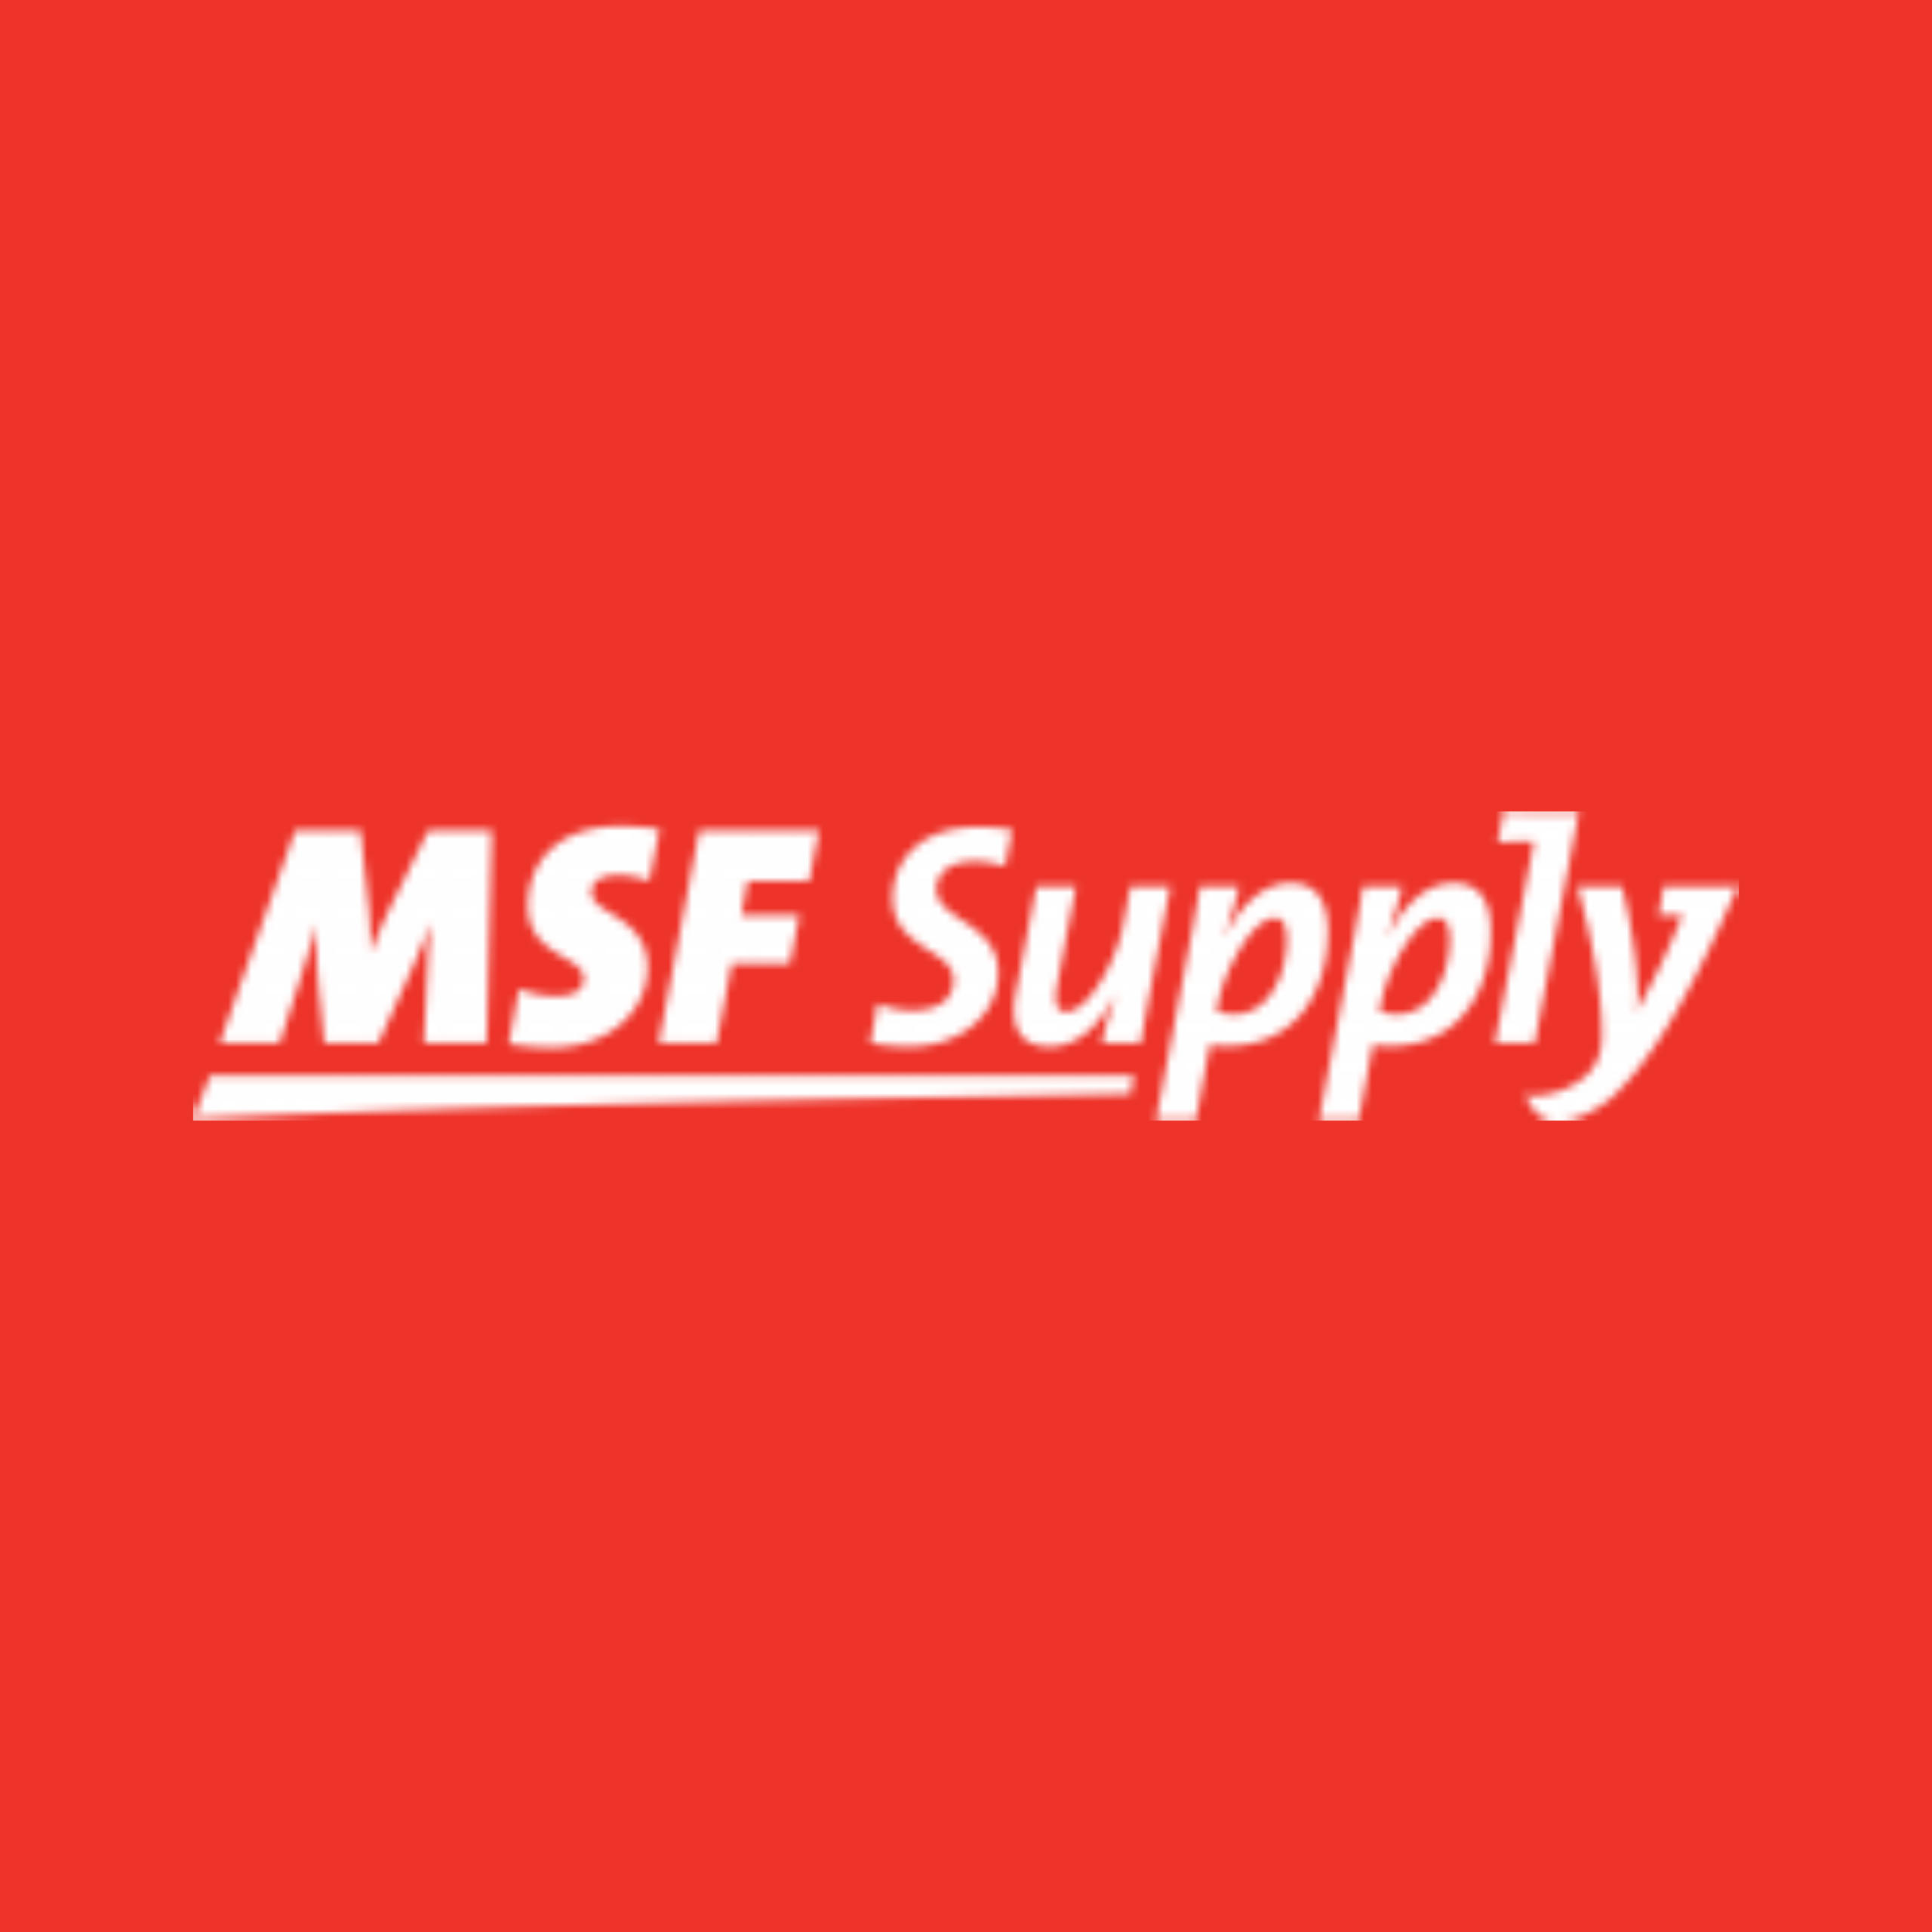 Le logo emblématique de Msf Supply se détache brillamment sur un fond rouge vif.